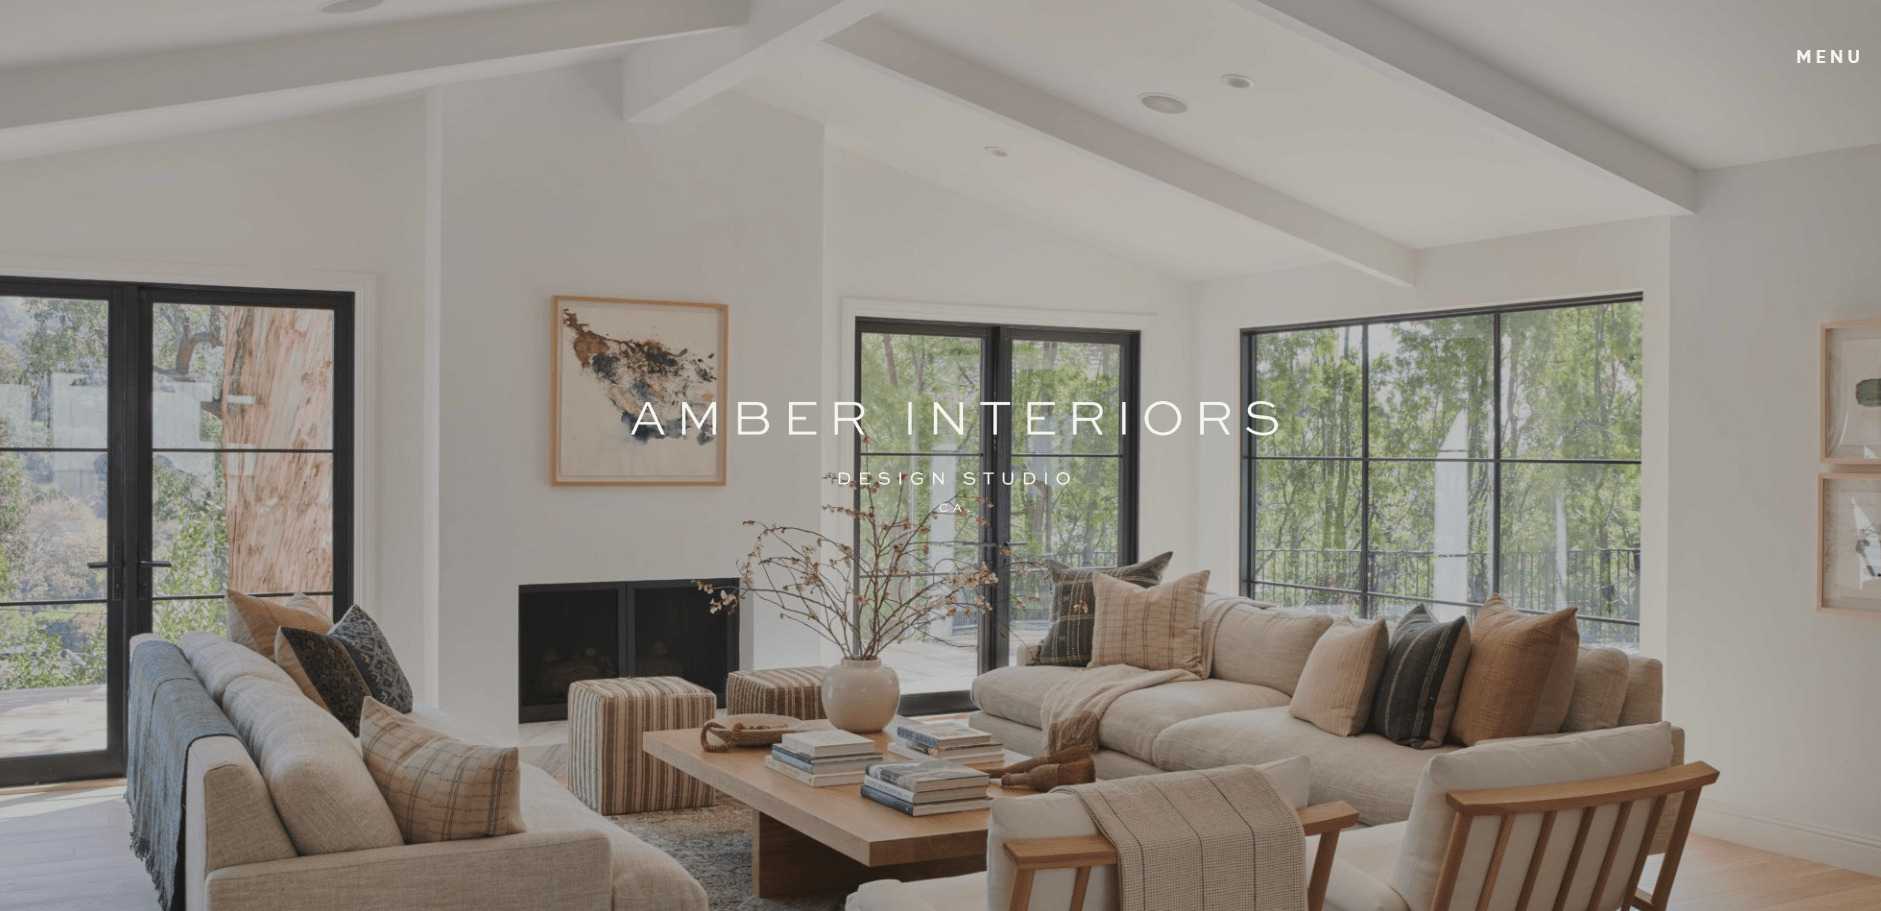 Top 10 Best Interior Design Blogs - Amber Interiors